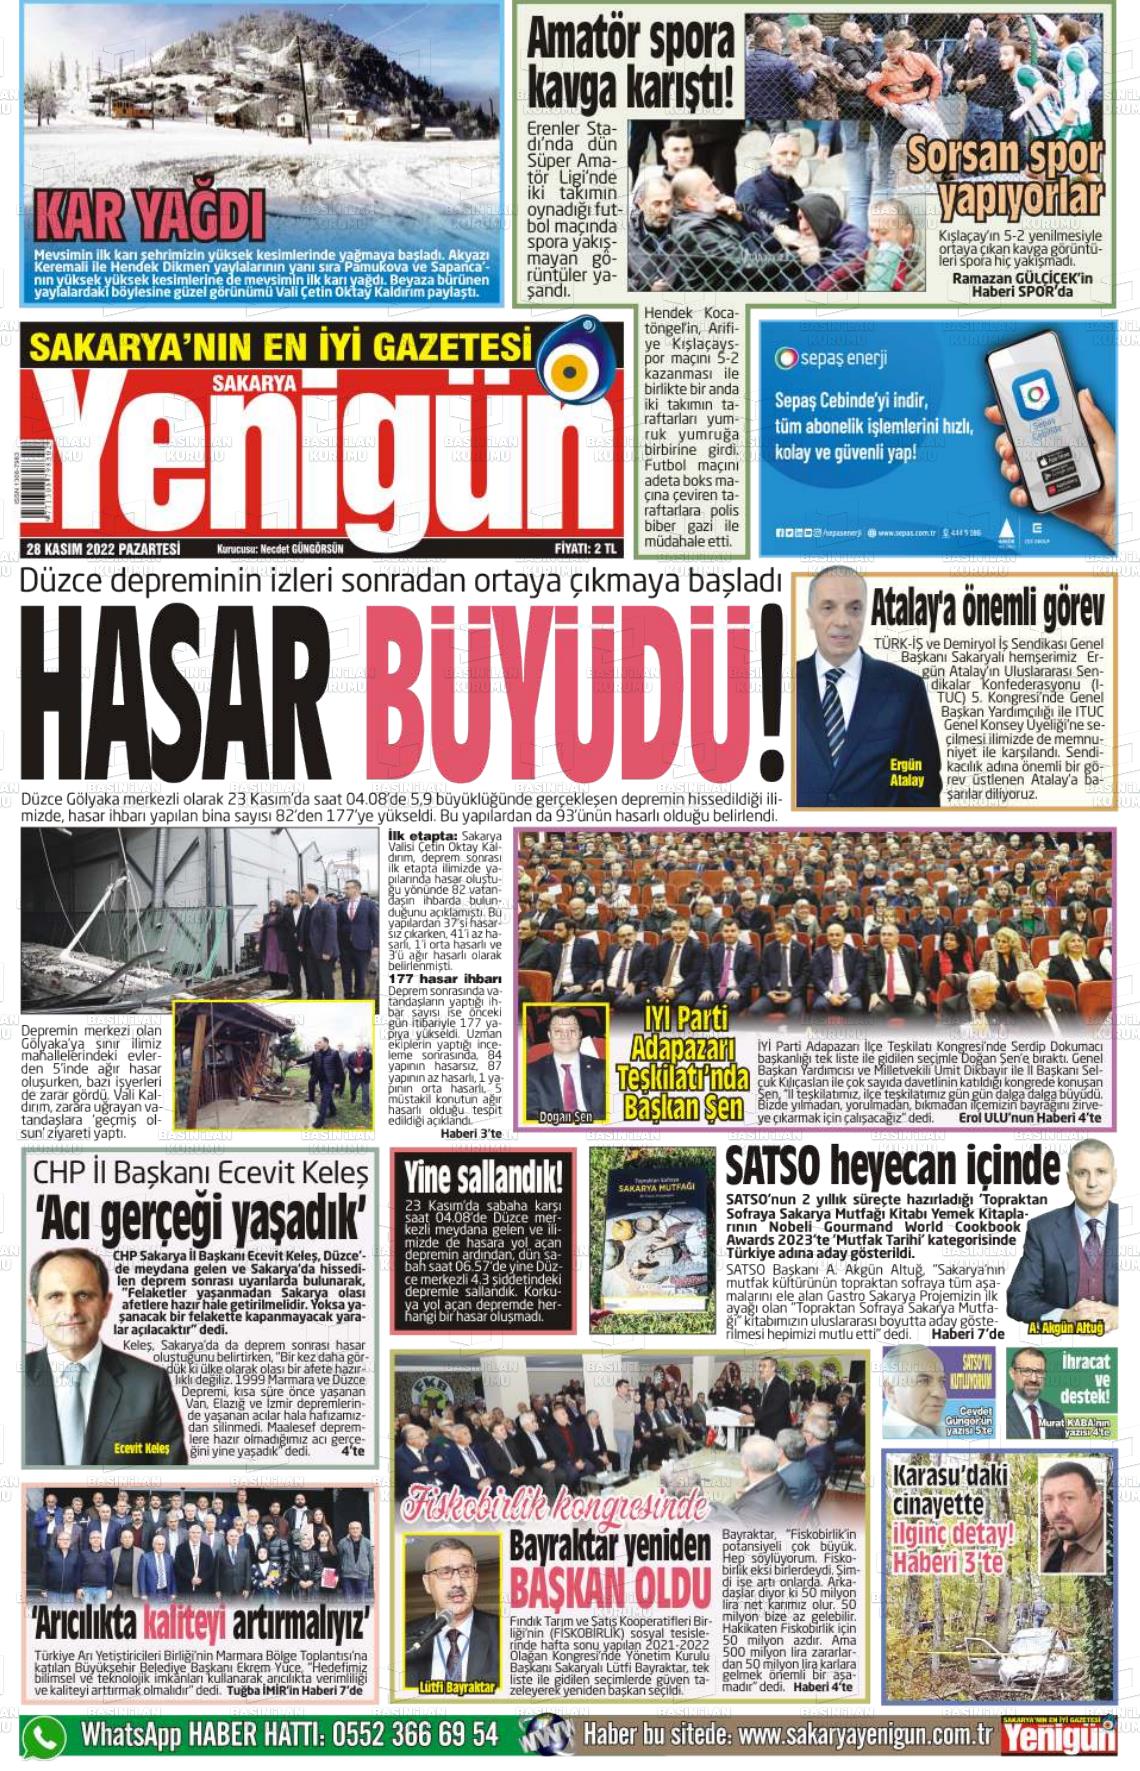 28 Kasım 2022 Sakarya Yenigün Gazete Manşeti